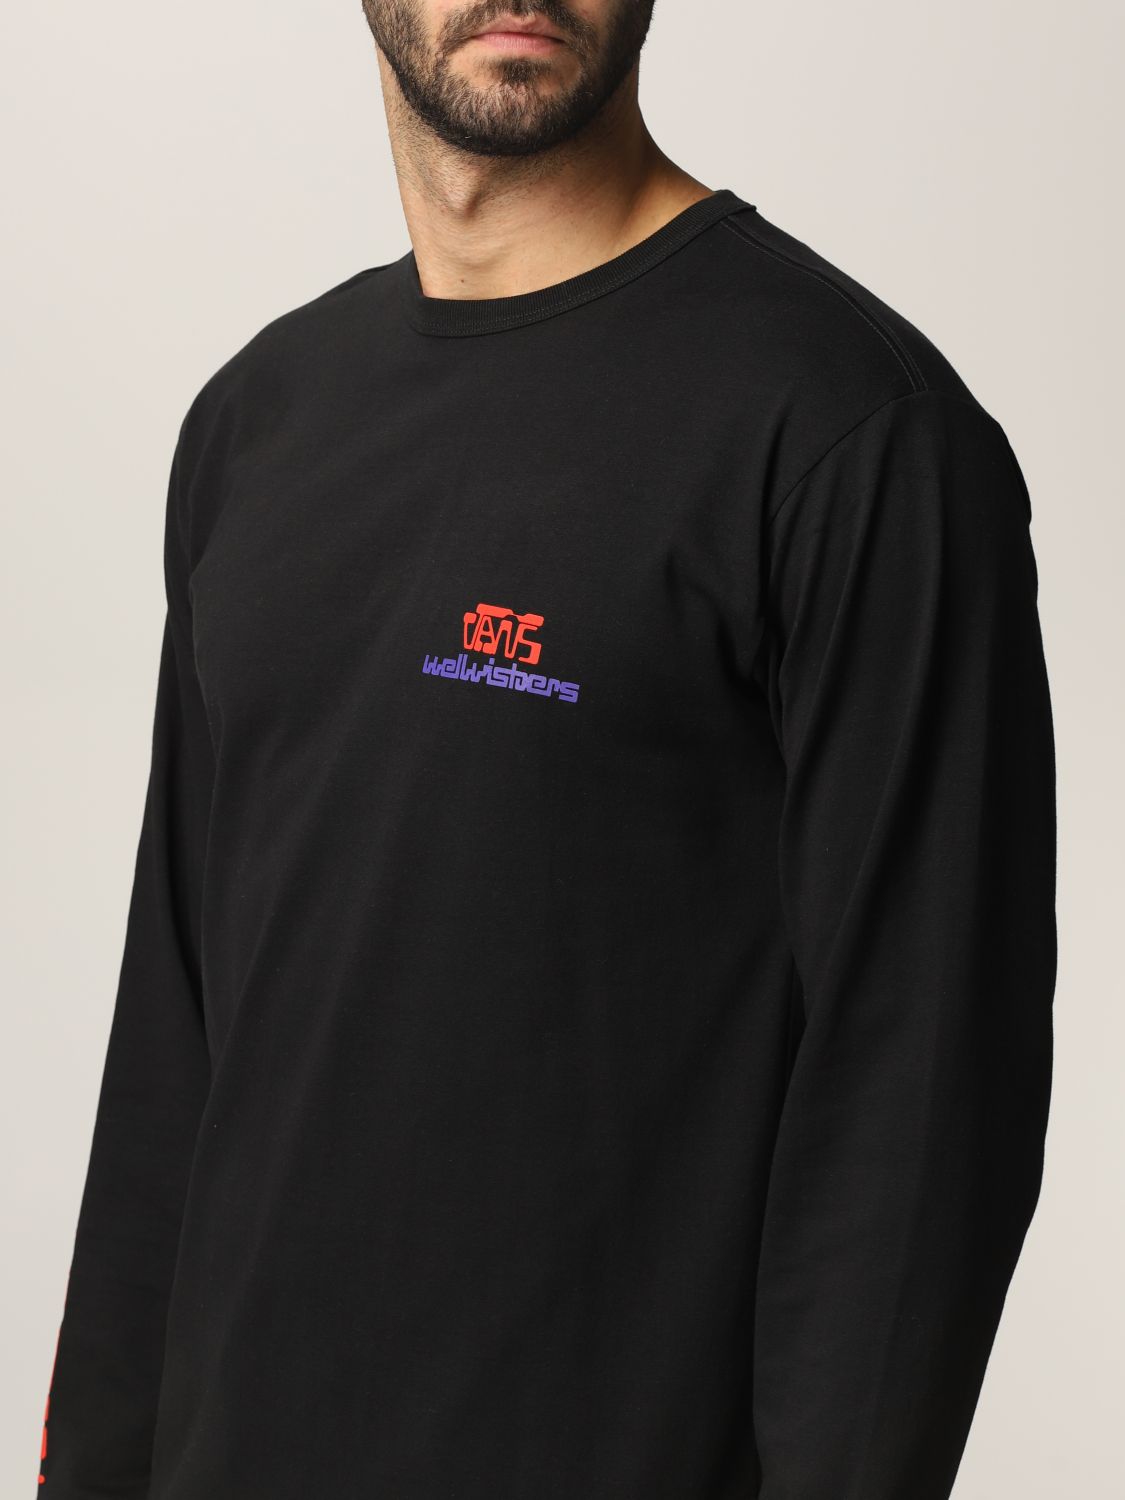 Vansアウトレット Tシャツ メンズ ブラック Giglio Comオンラインのvans Tシャツ Vn0a5ffr